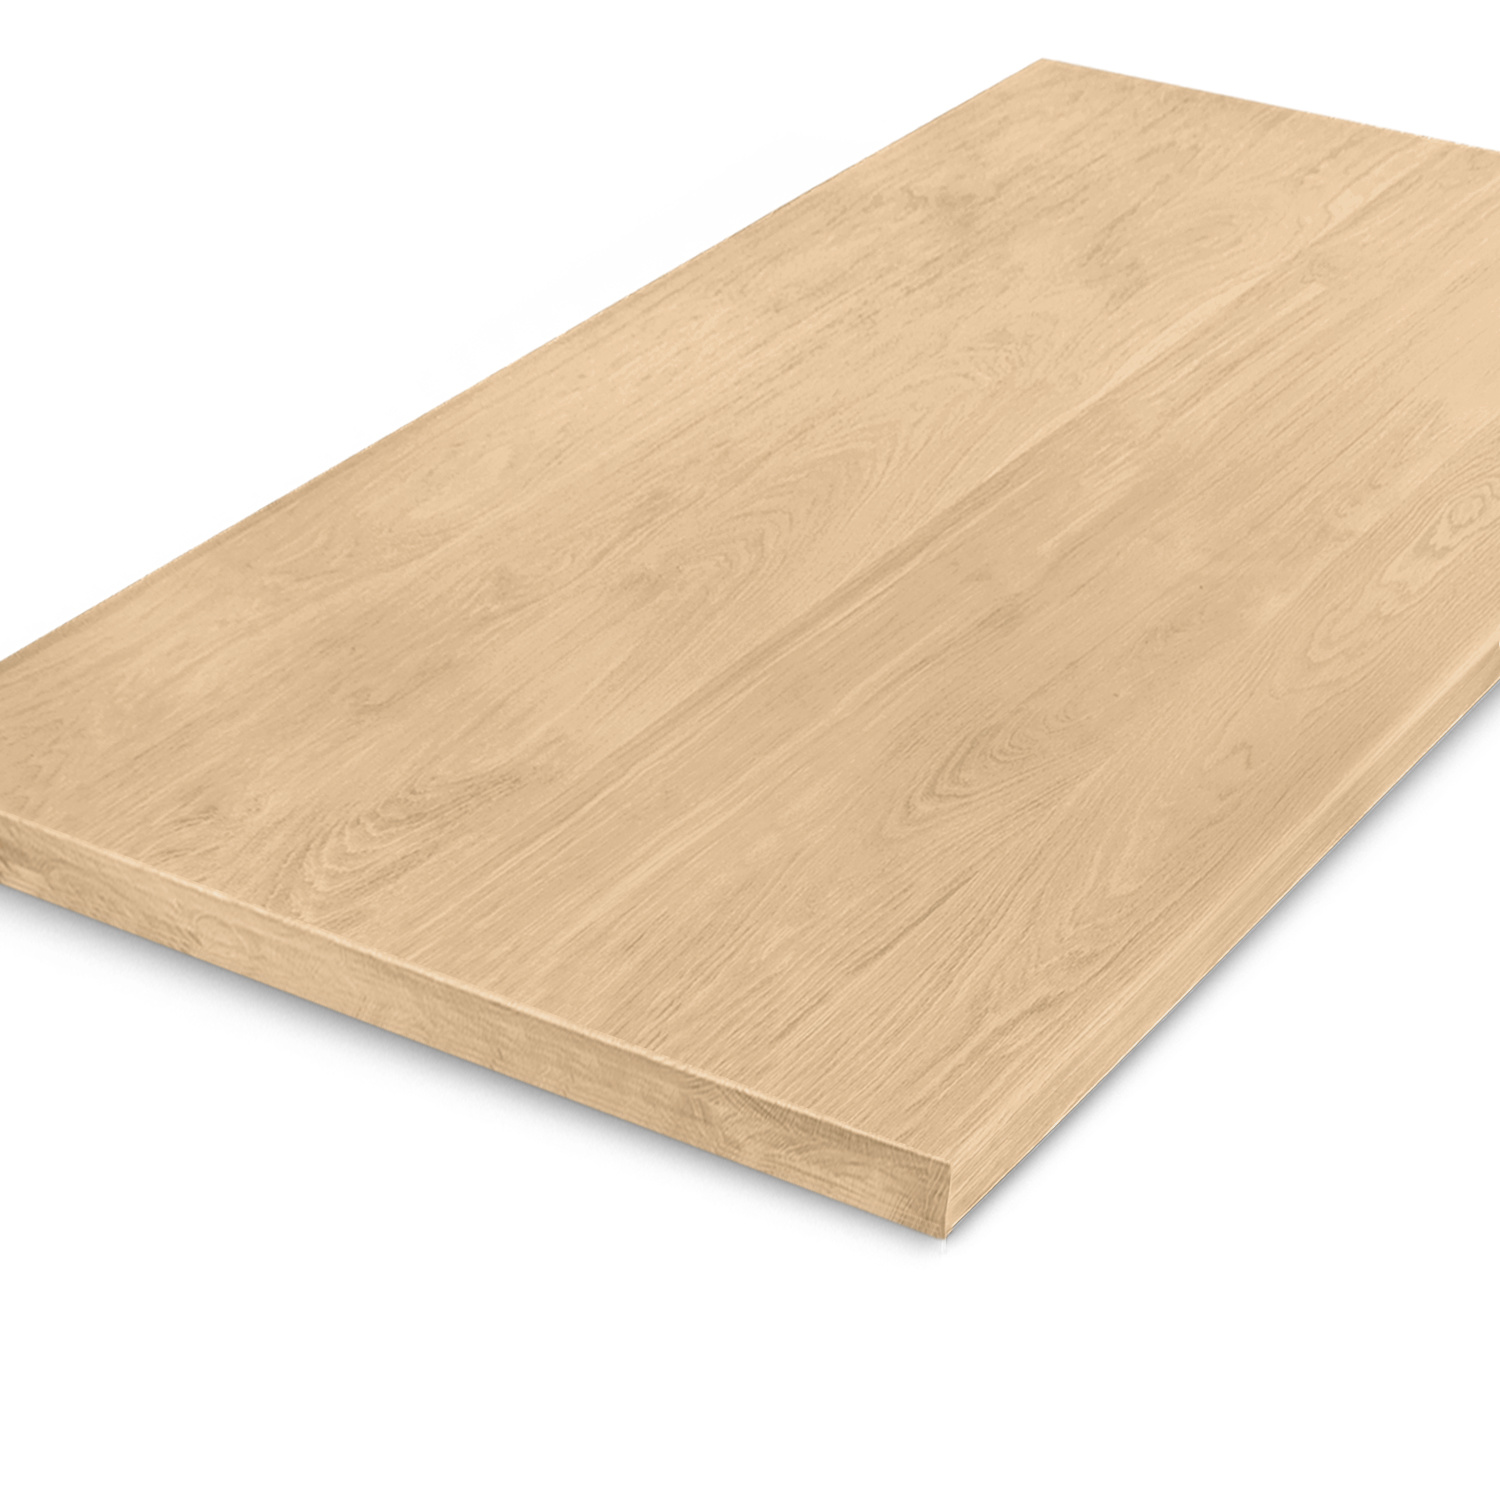  Tischplatte Eiche nach Maß - 6 cm dick (3-lagig) - Eichenholz A-Qualität - Eiche Tischplatte aufgedoppelt - verleimt & künstlich getrocknet (HF 8-12%) - 70-120x140-350 cm